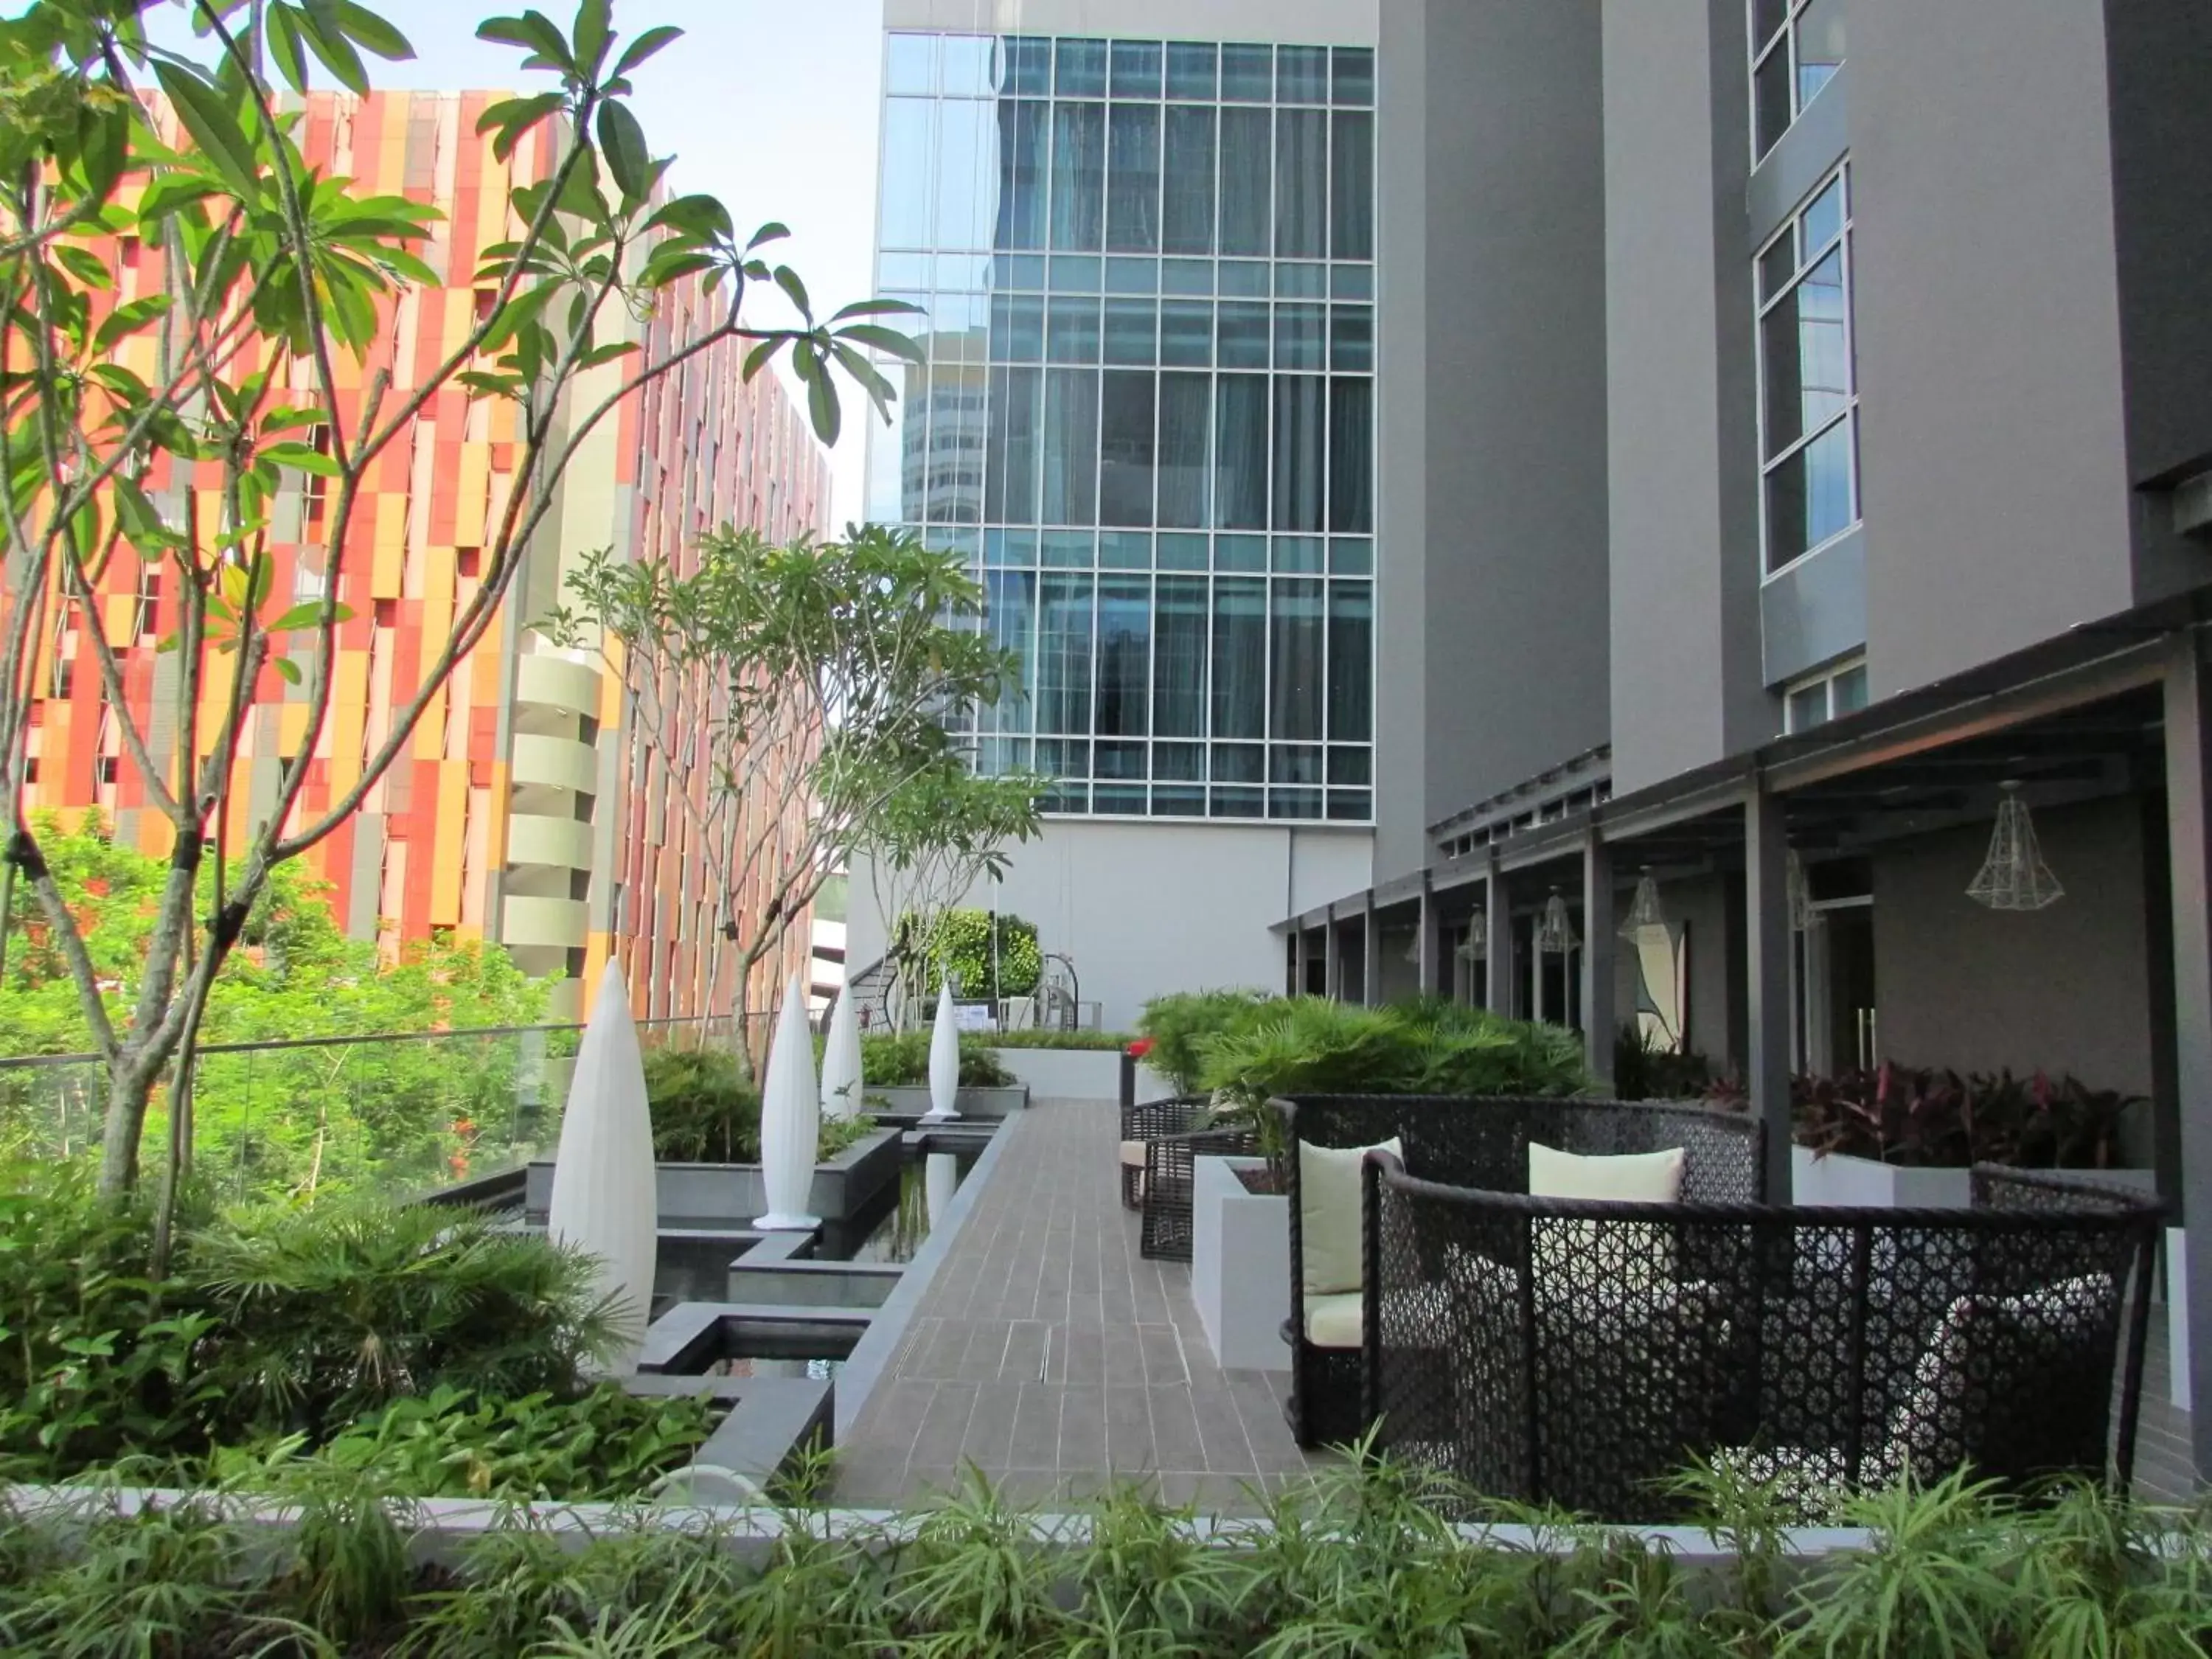 Lounge or bar, Patio/Outdoor Area in Mercure Singapore Bugis